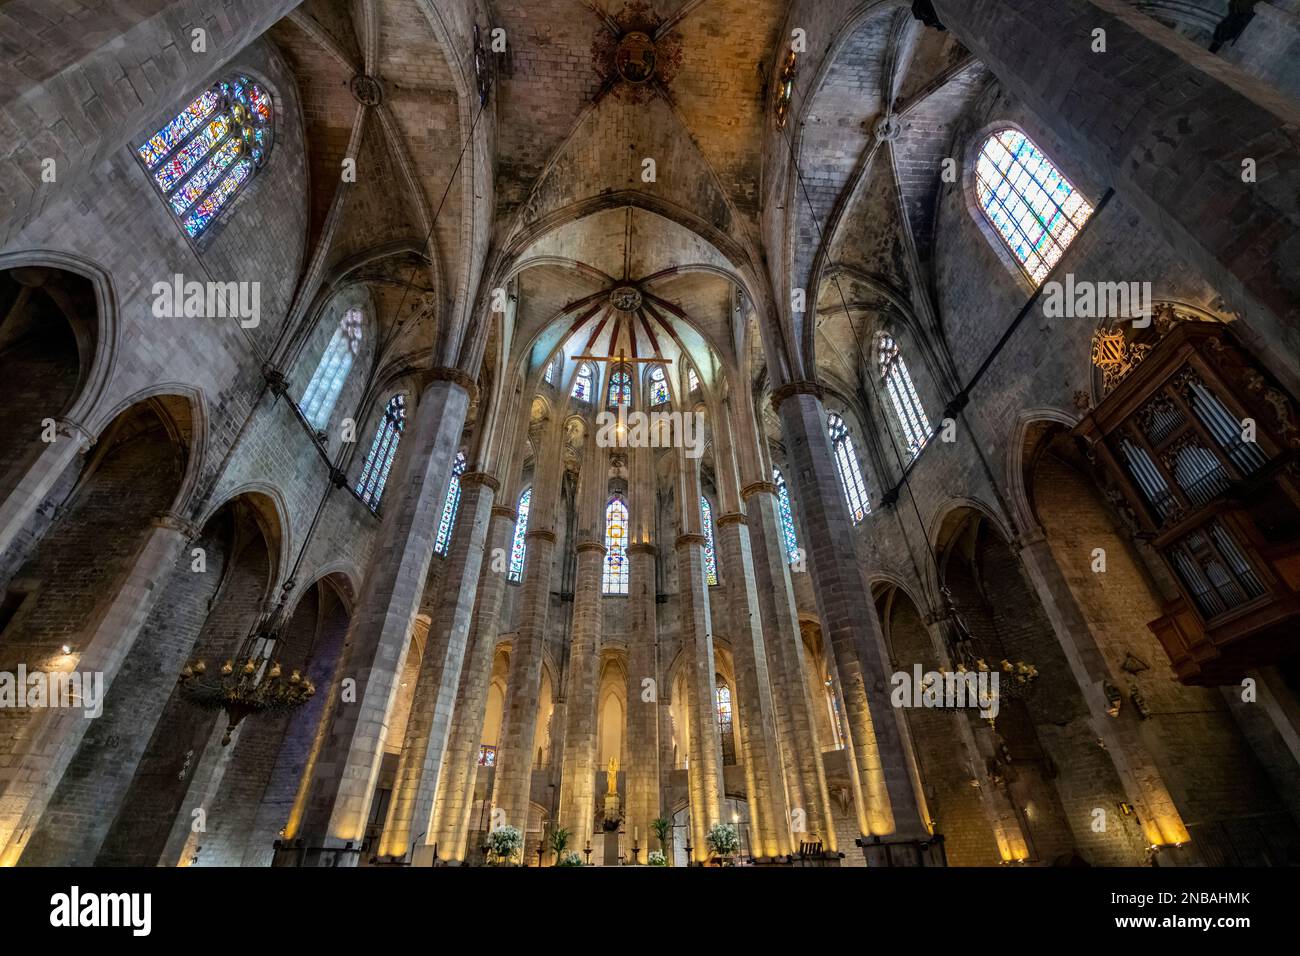 L'intérieur gothique de l'église de la basilique Santa Maria del Mar dans le quartier de Ribera près du quartier gothique de Barcelone, en Espagne. Banque D'Images